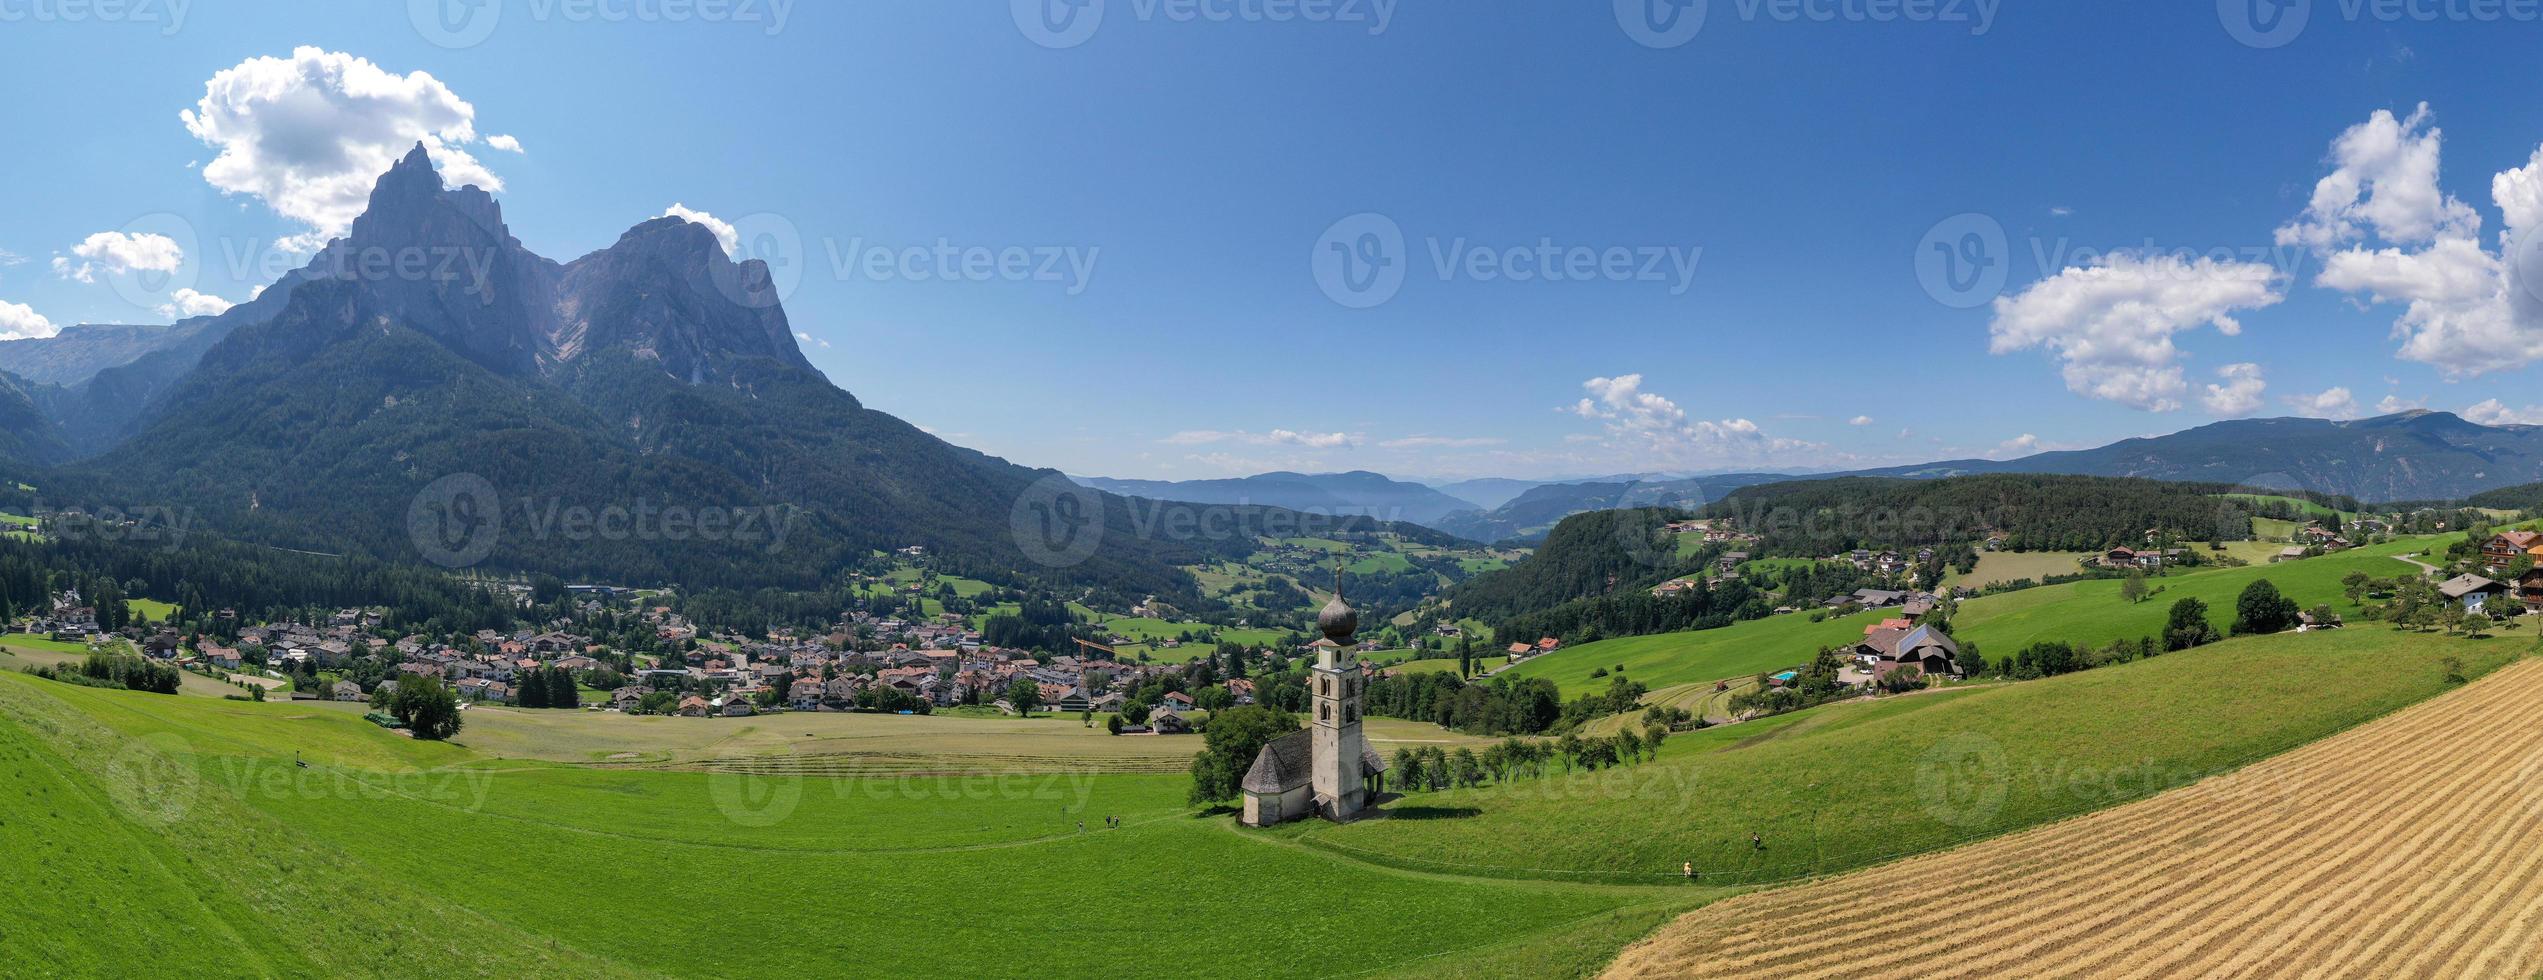 st. Valentin kastelruth dorp kerk in de zomer in de dolomiet Alpen. verbazingwekkend landschap met klein kapel Aan zonnig weide en petz top Bij kastelruth gemeente. dolomieten, zuiden Tirol, Italië foto